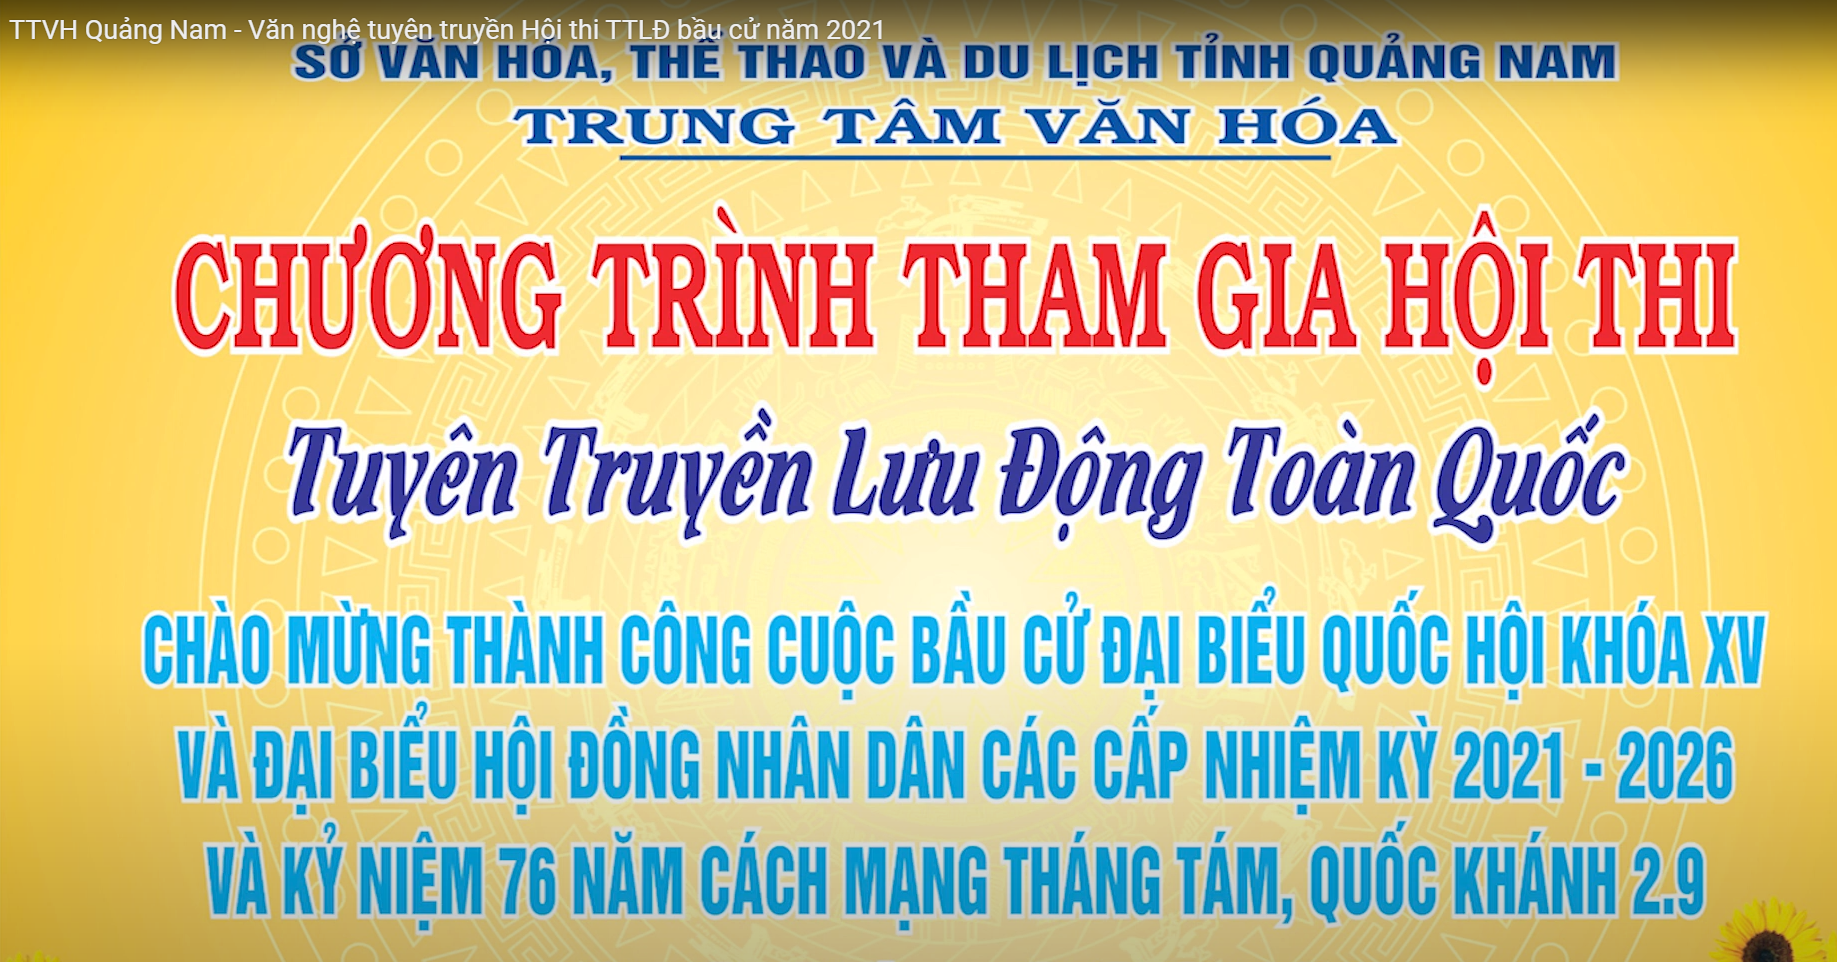 TTVH Quảng Nam - Văn nghệ tuyên truyền Hội thi TTLĐ bầu cử năm 2021